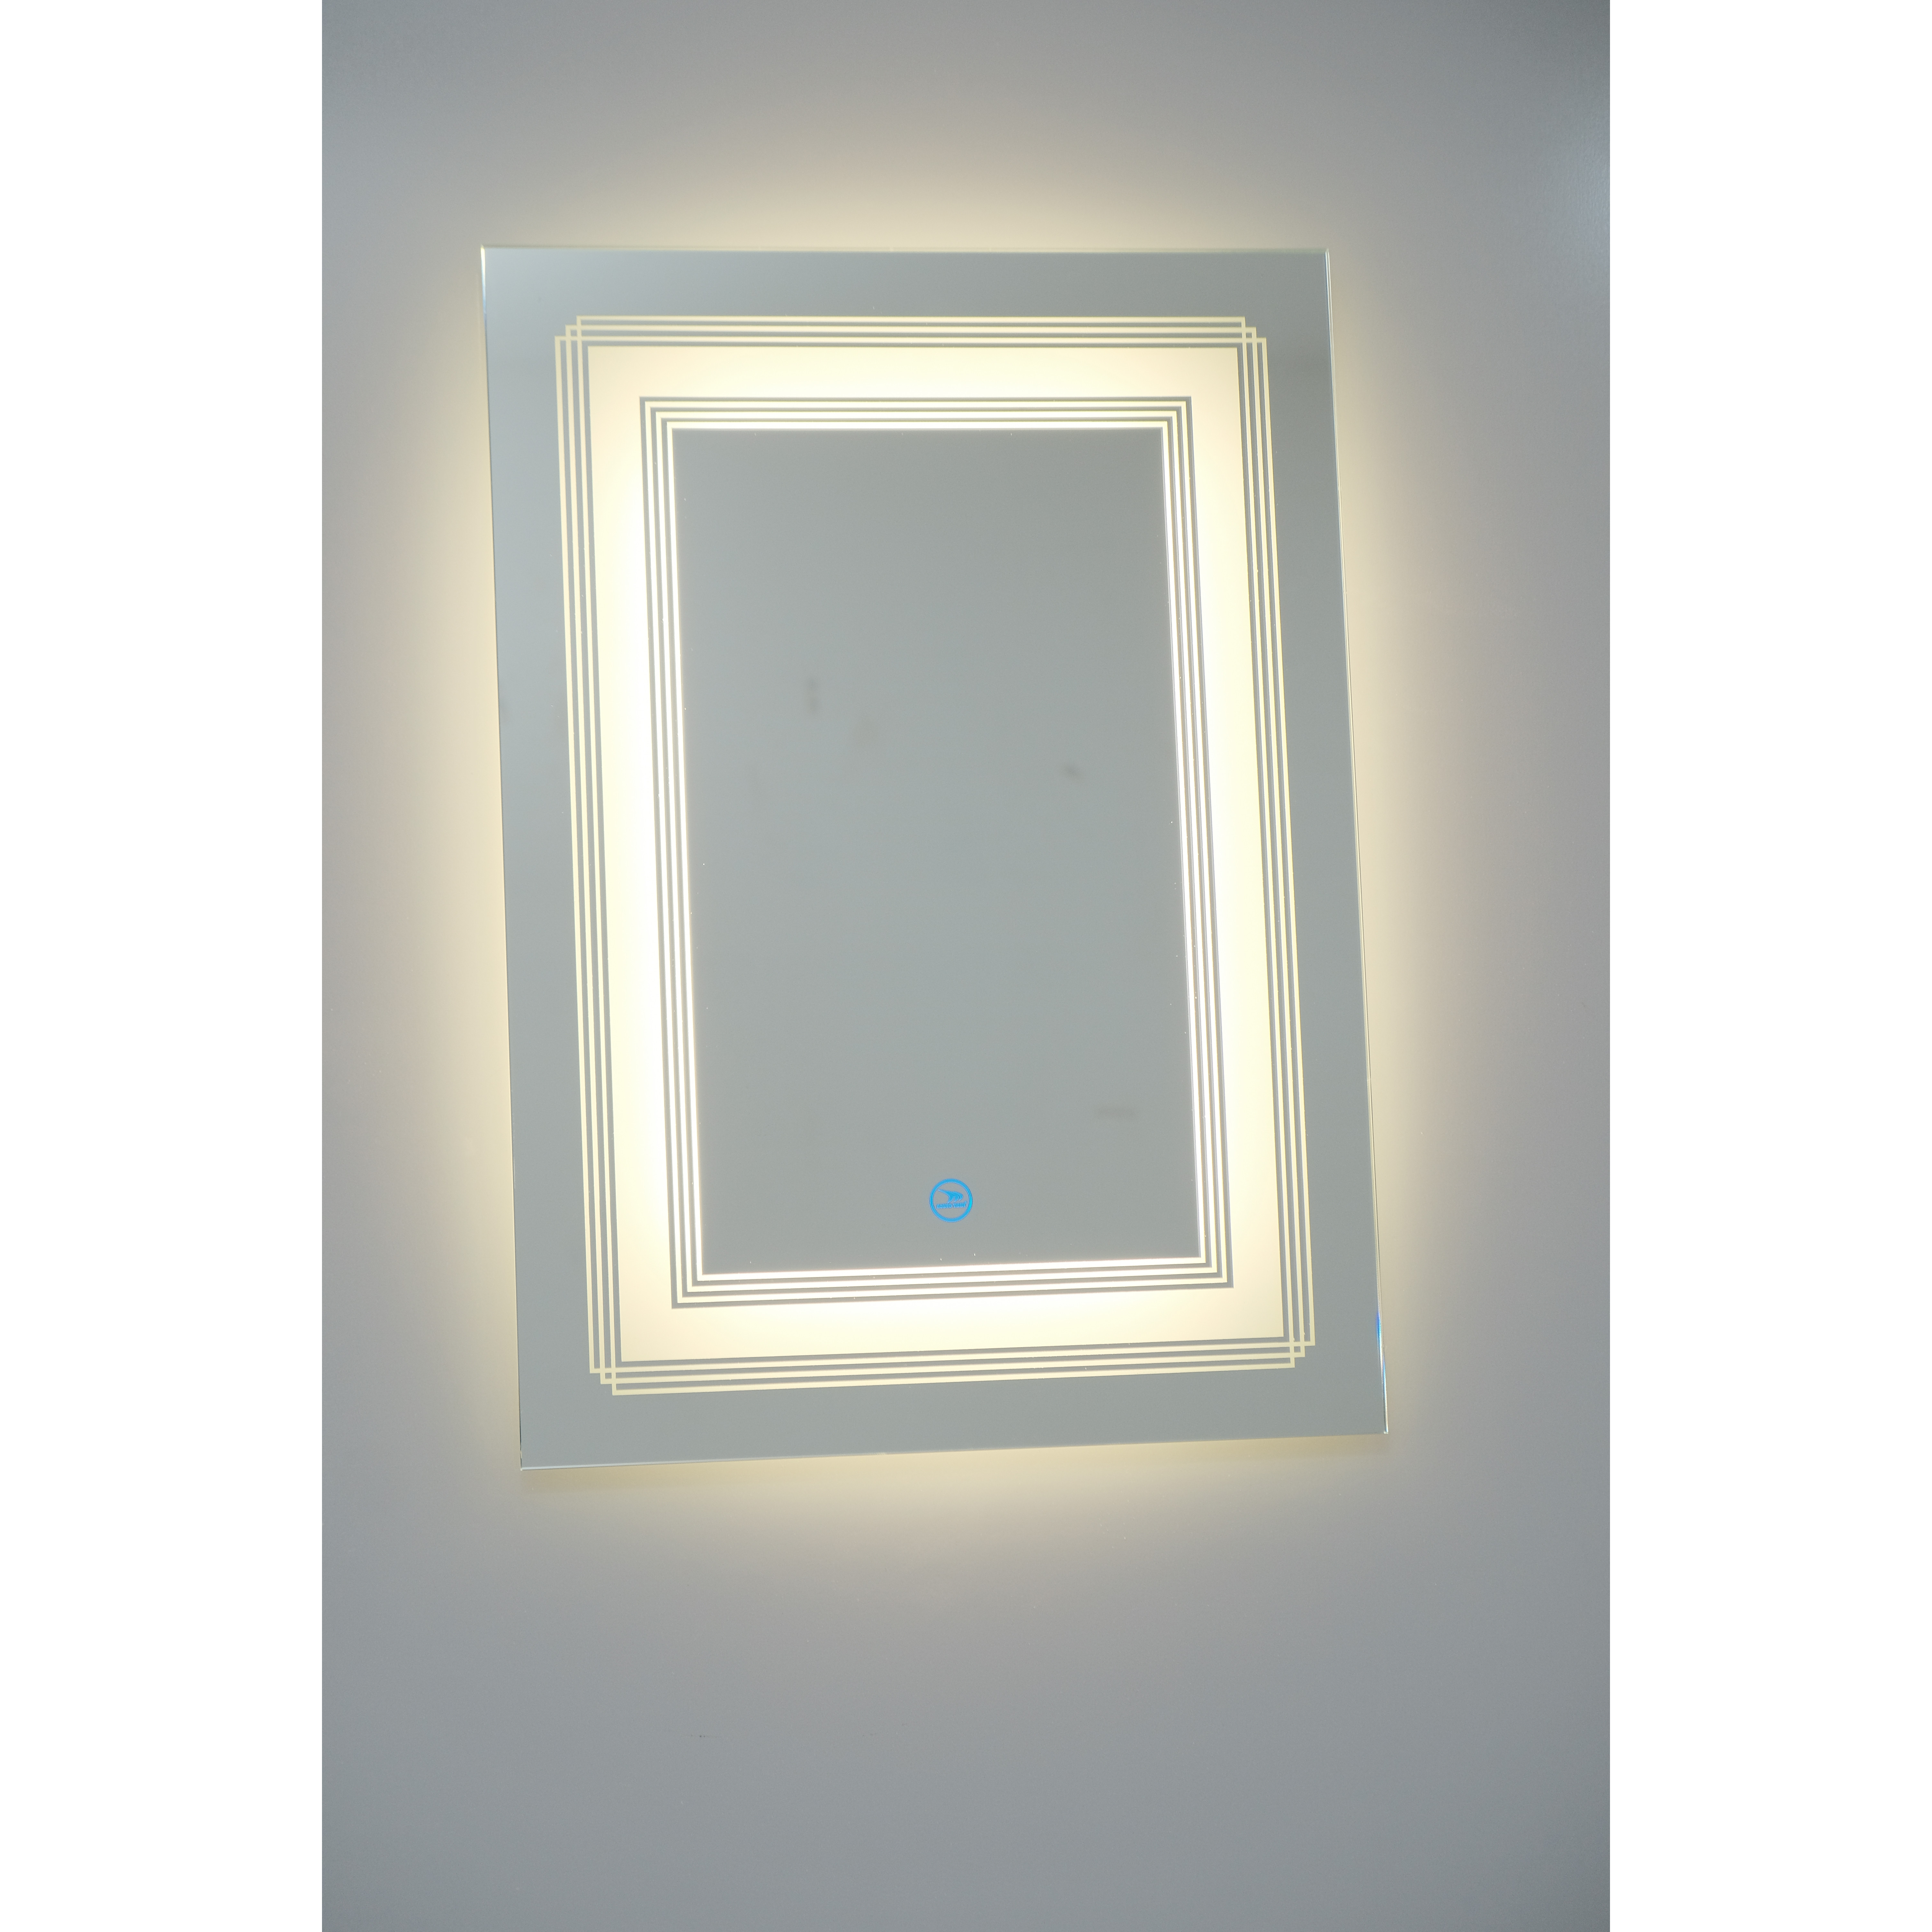 Gương đèn LED cảm ứng cao cấp Hoàng Thiện GD 7388-8